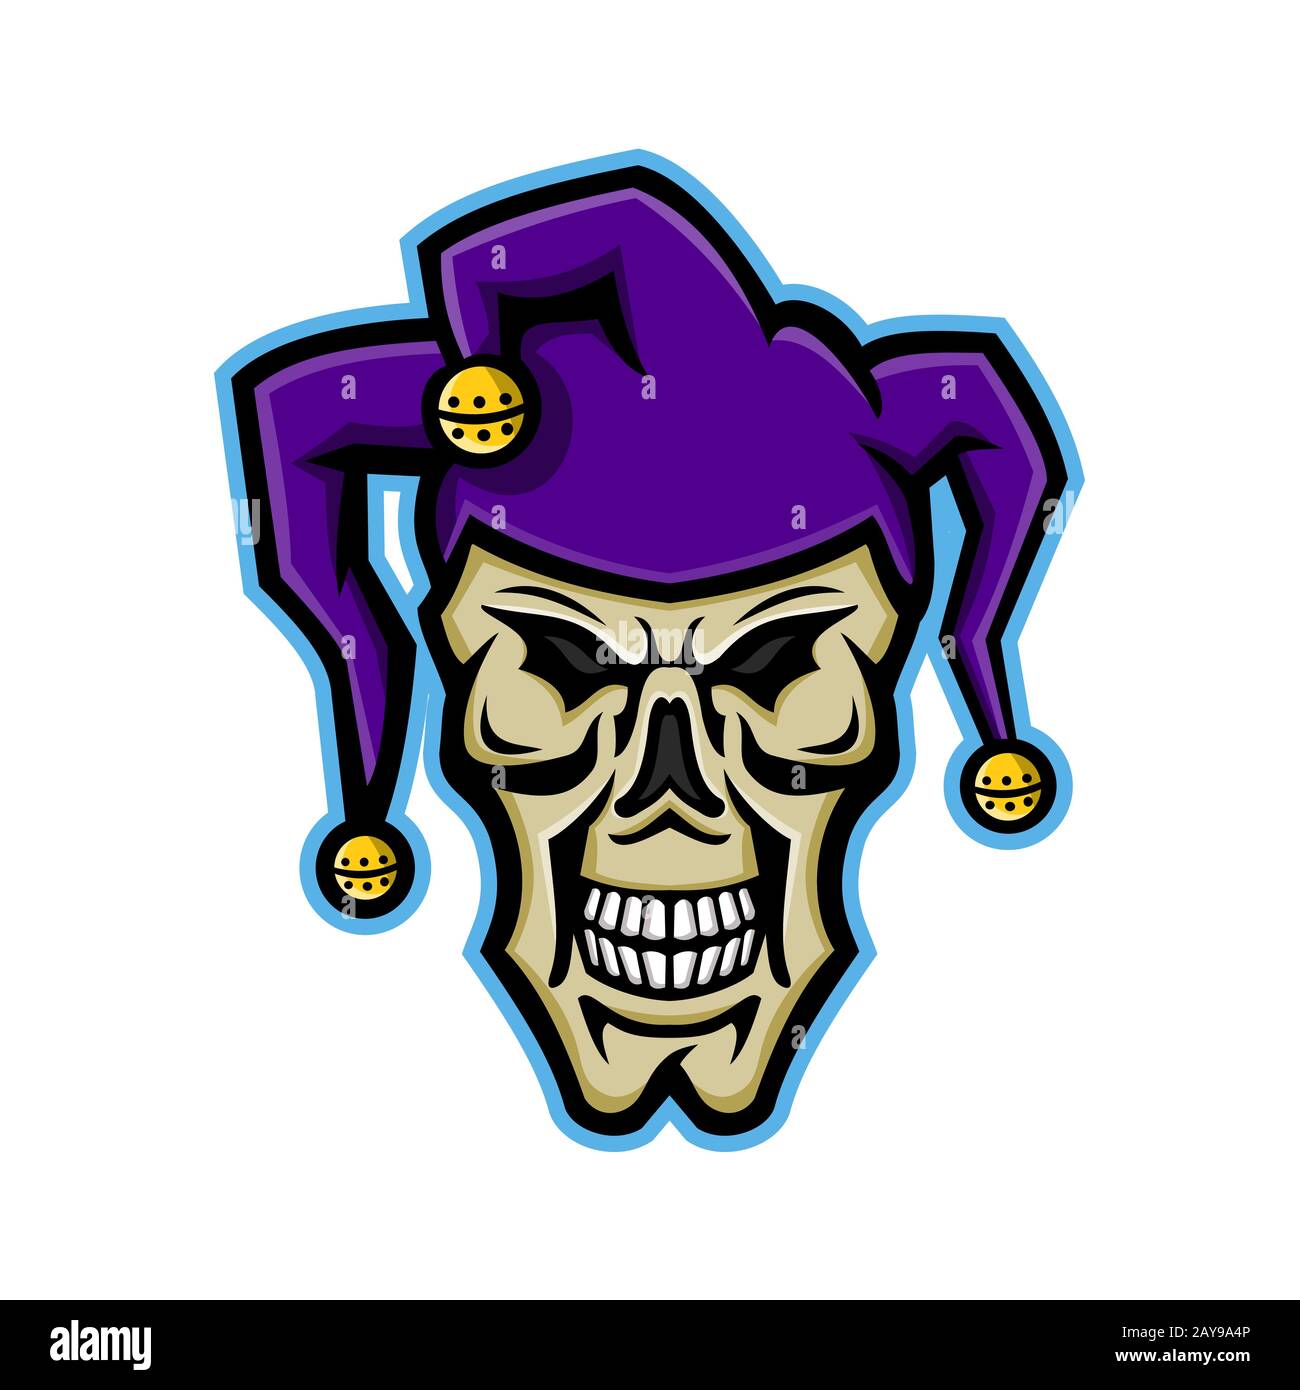 Court Jester Skull Mascot Stock Photo